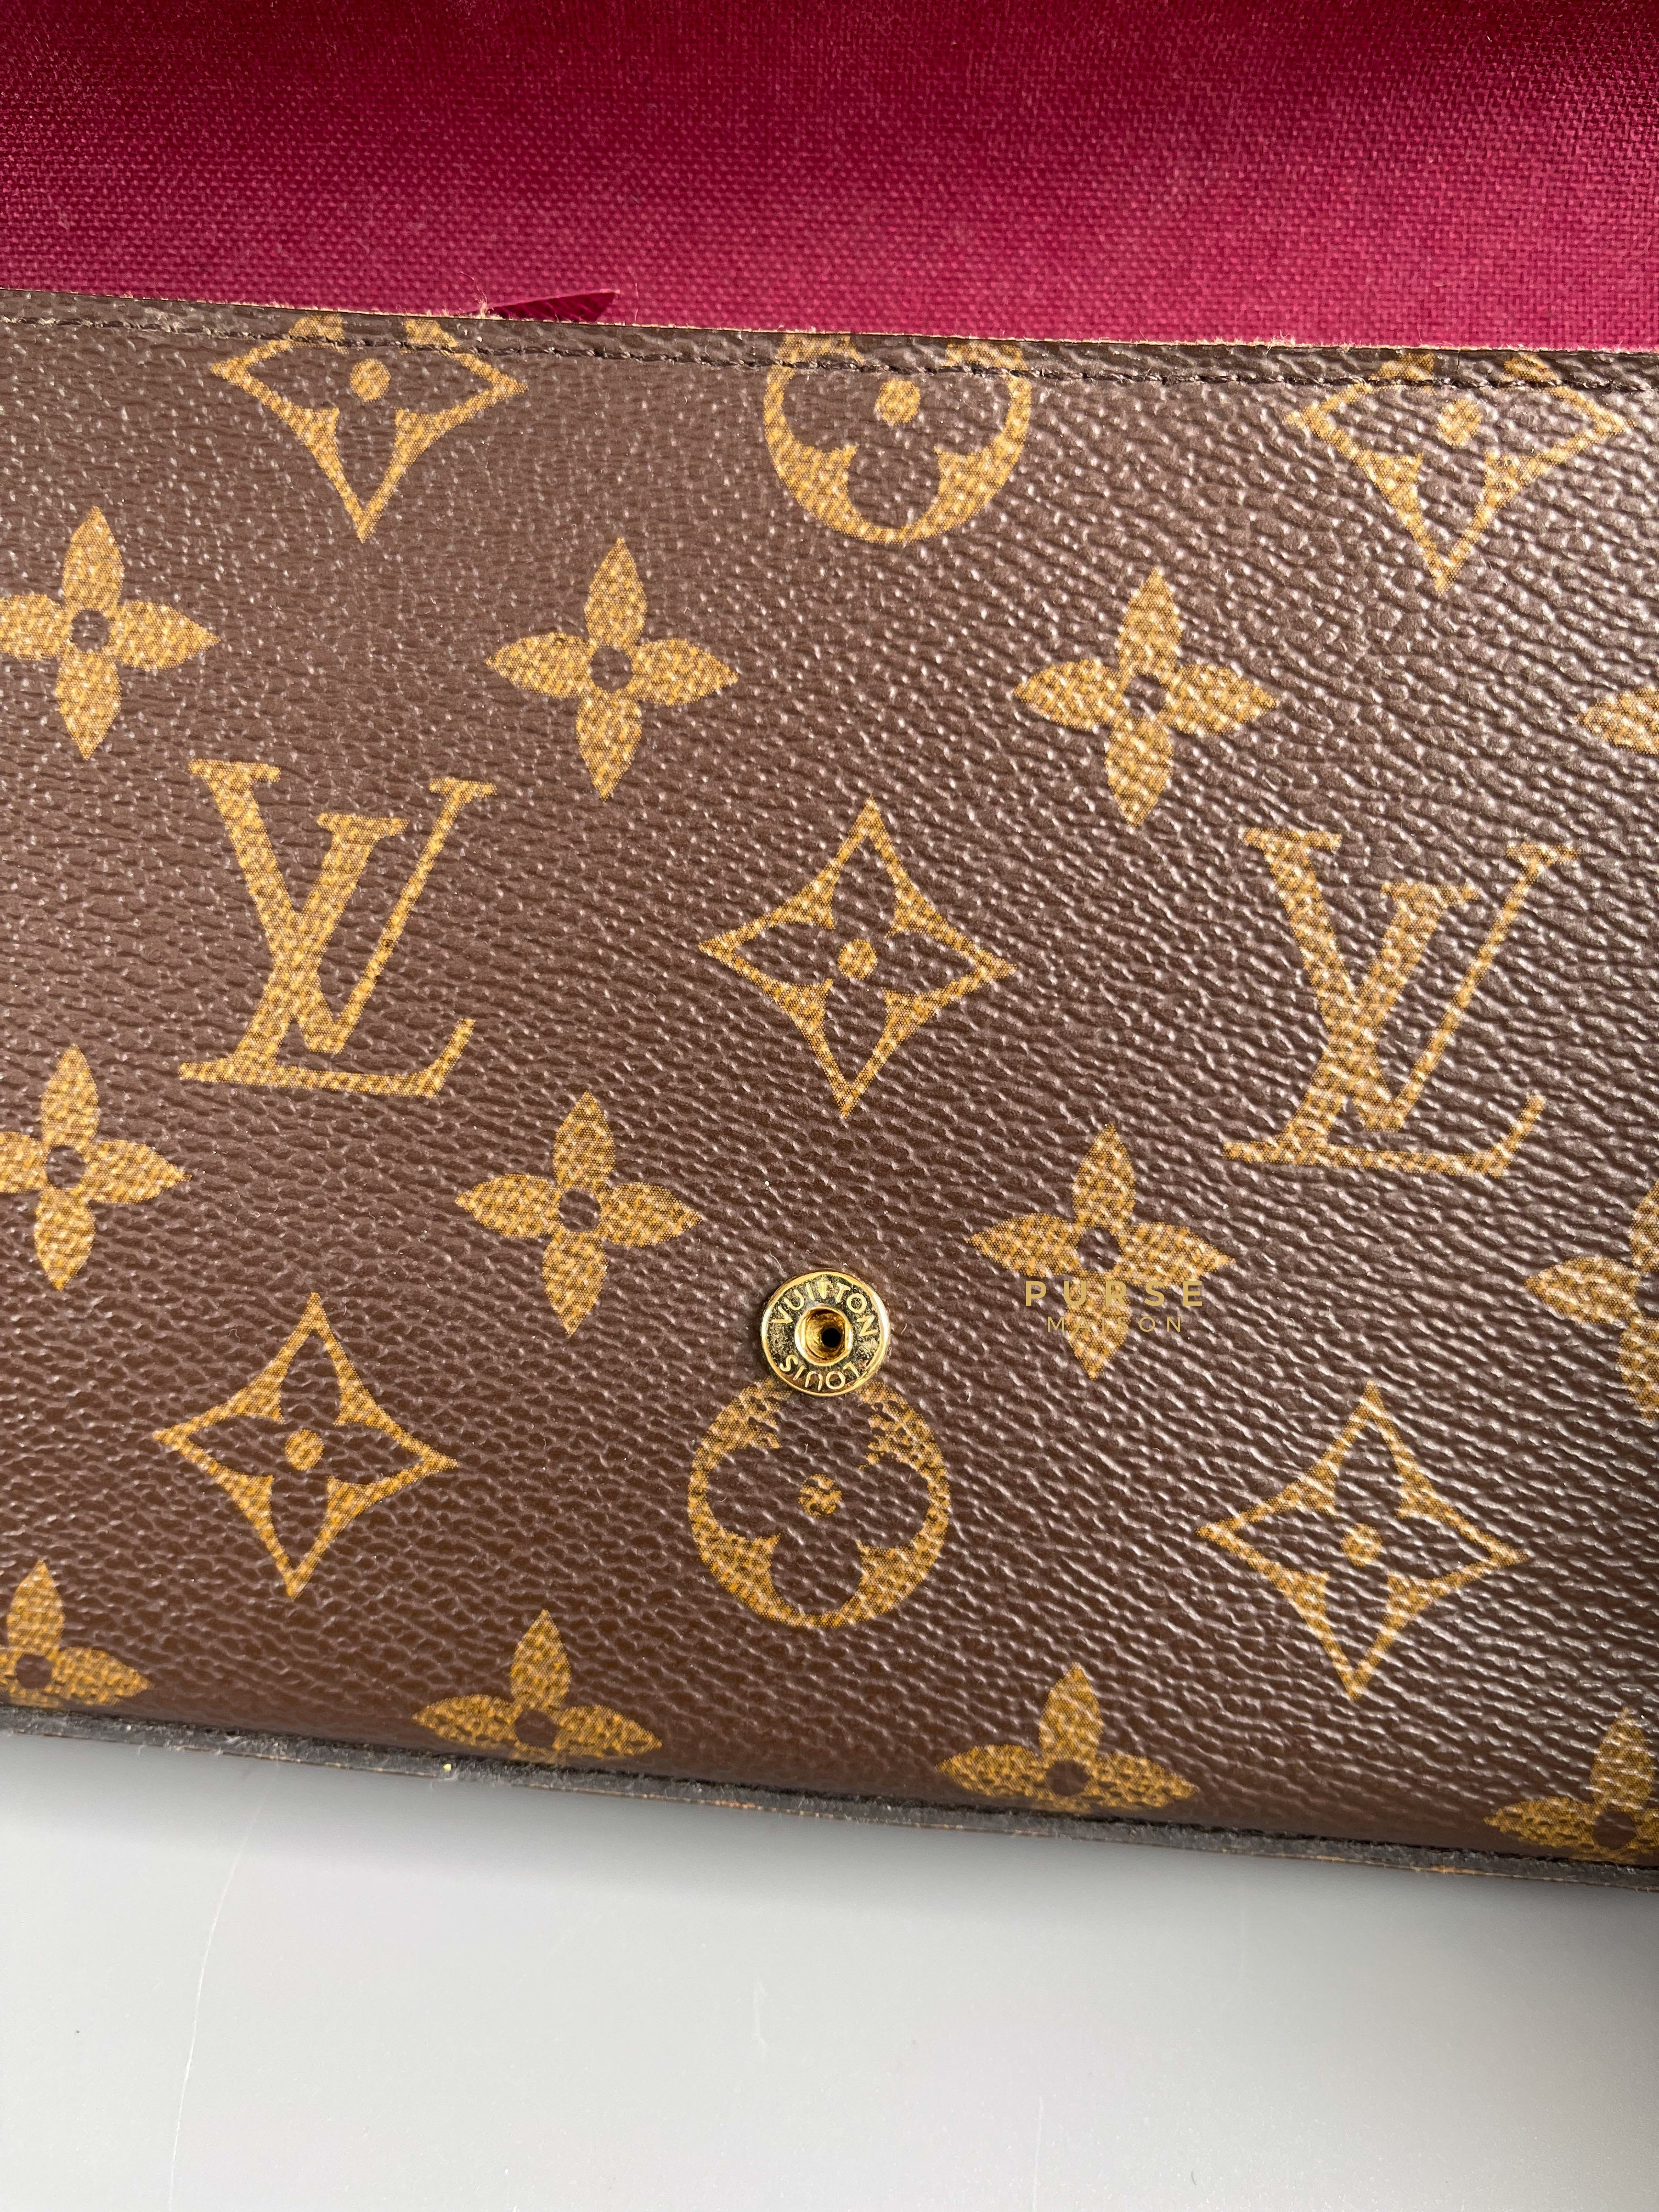 Louis Vuitton Pochette Felicie Monogram (Date Code: CA2139) | Purse Maison Luxury Bags Shop